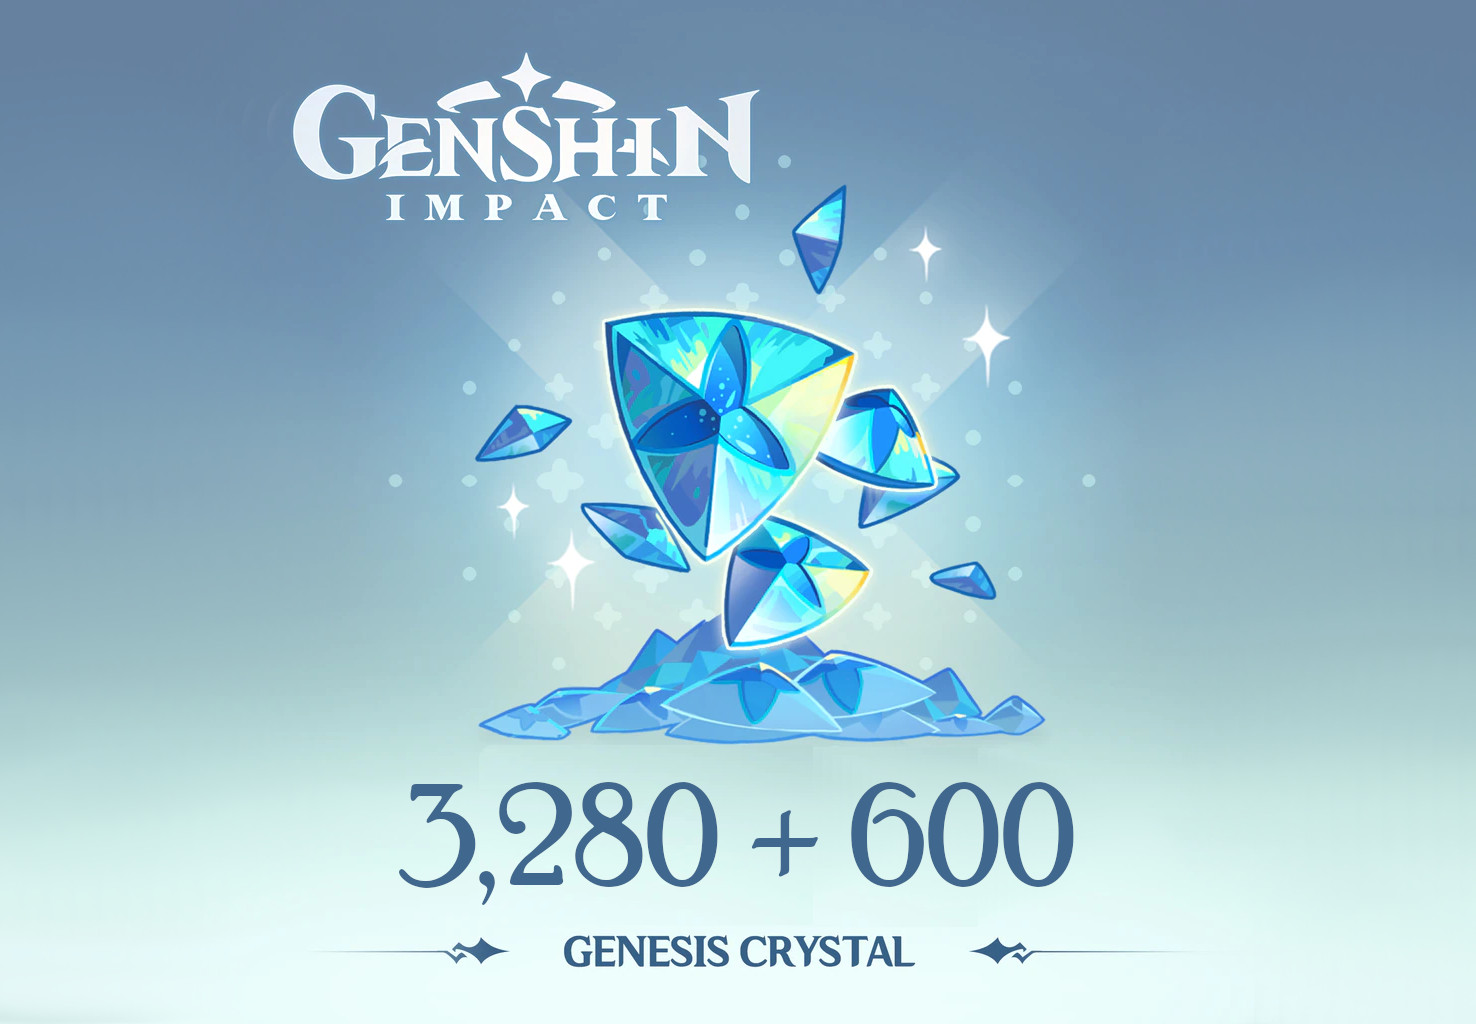 (53.39$) Genshin Impact - 3,280 + 600 Genesis Crystals Reidos Voucher